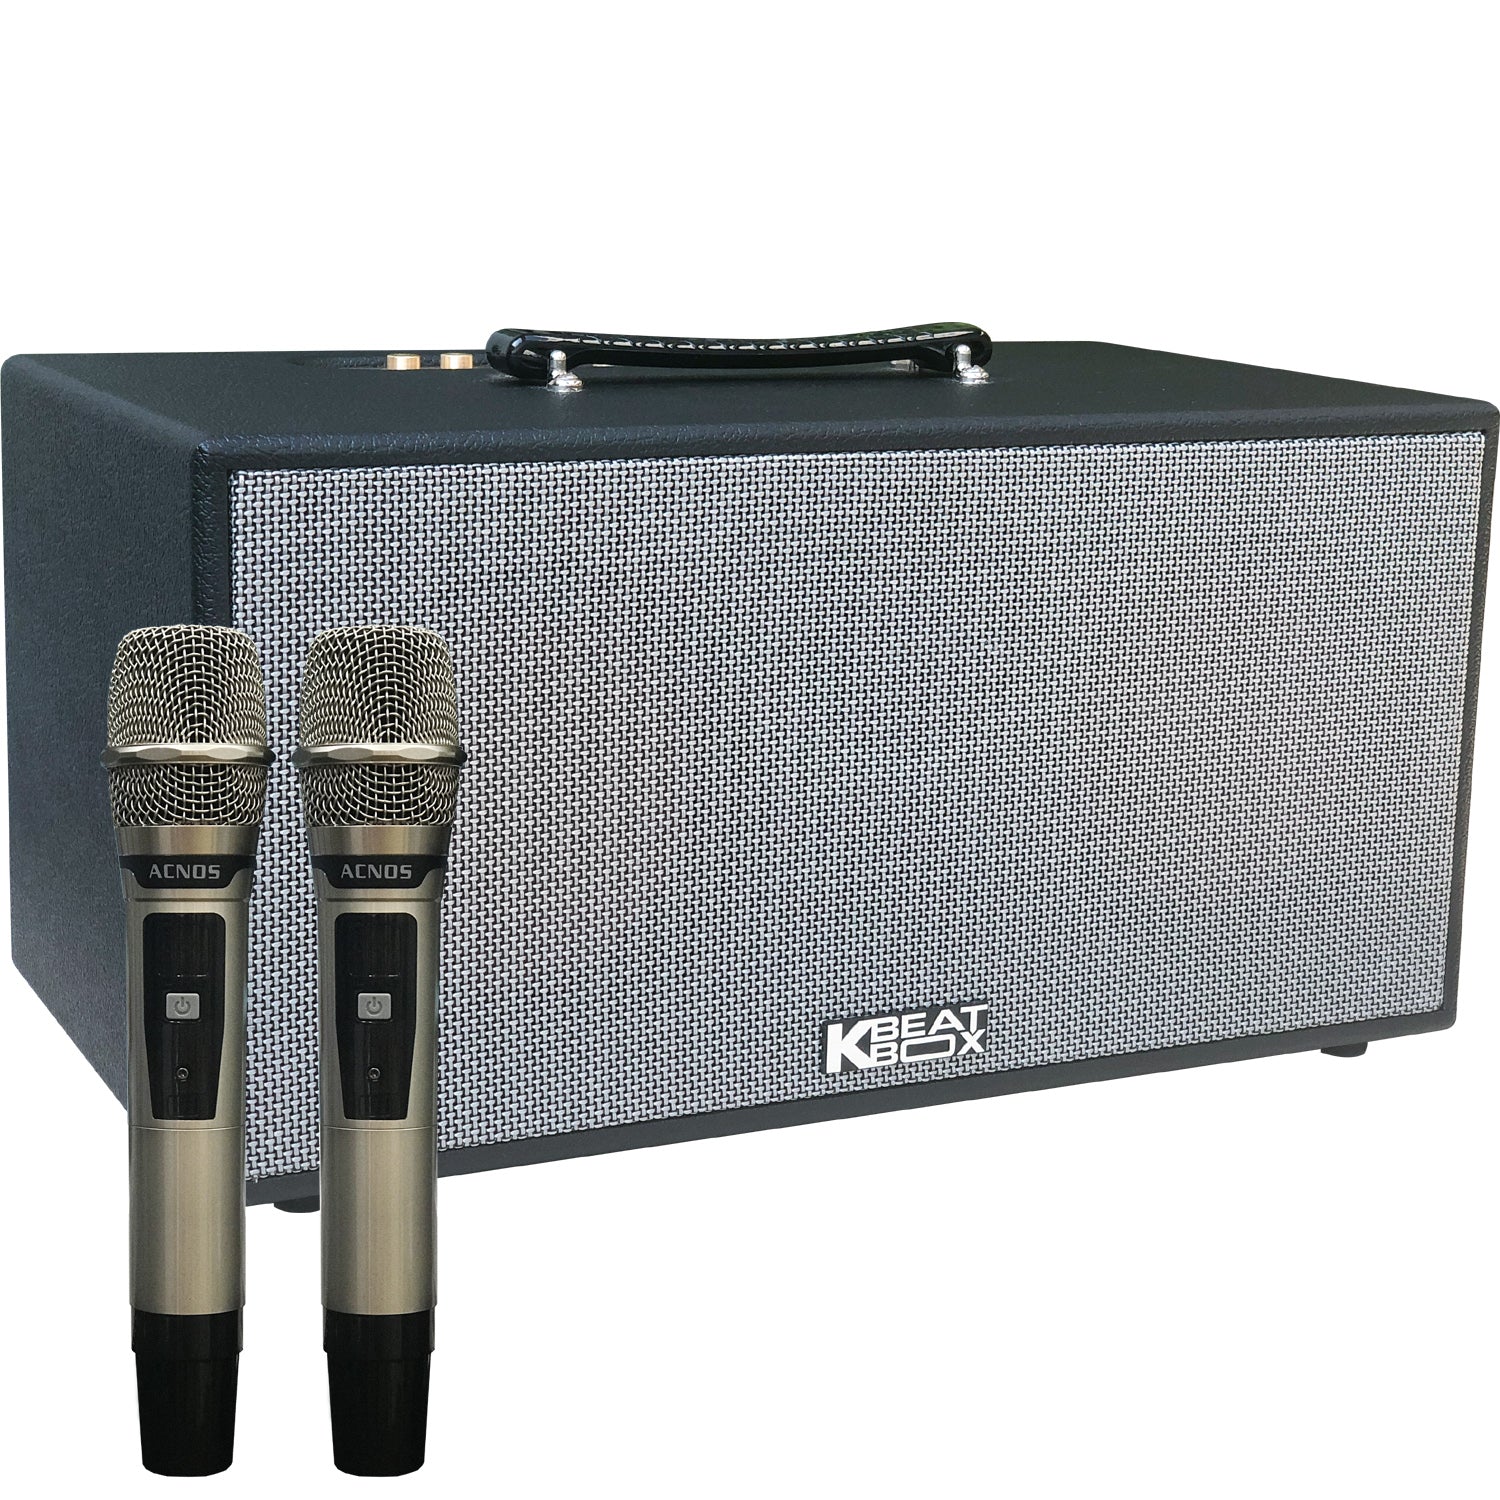 KBeatBox KS-NET450 [150W RMS / 750W PMPO] Karaoke Powered Speaker System + 2 Wireless Mic's + Karaoke Cloud App